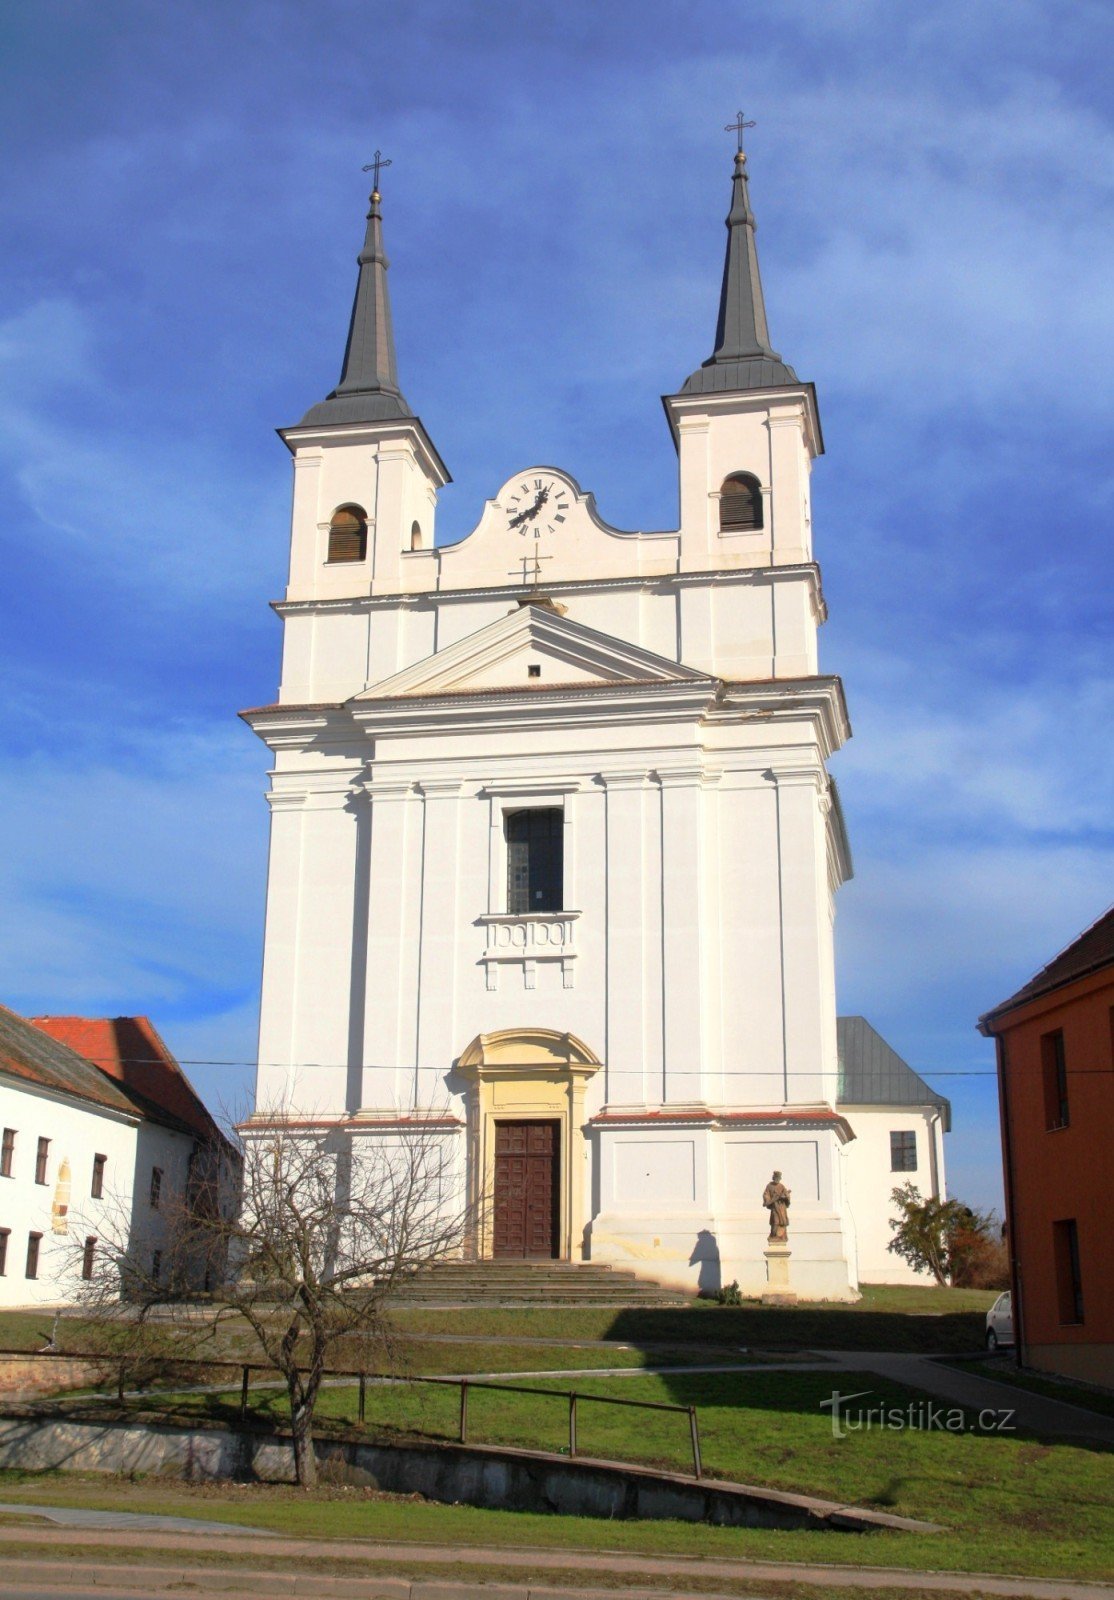 Drnholec - Igreja da Santíssima Trindade